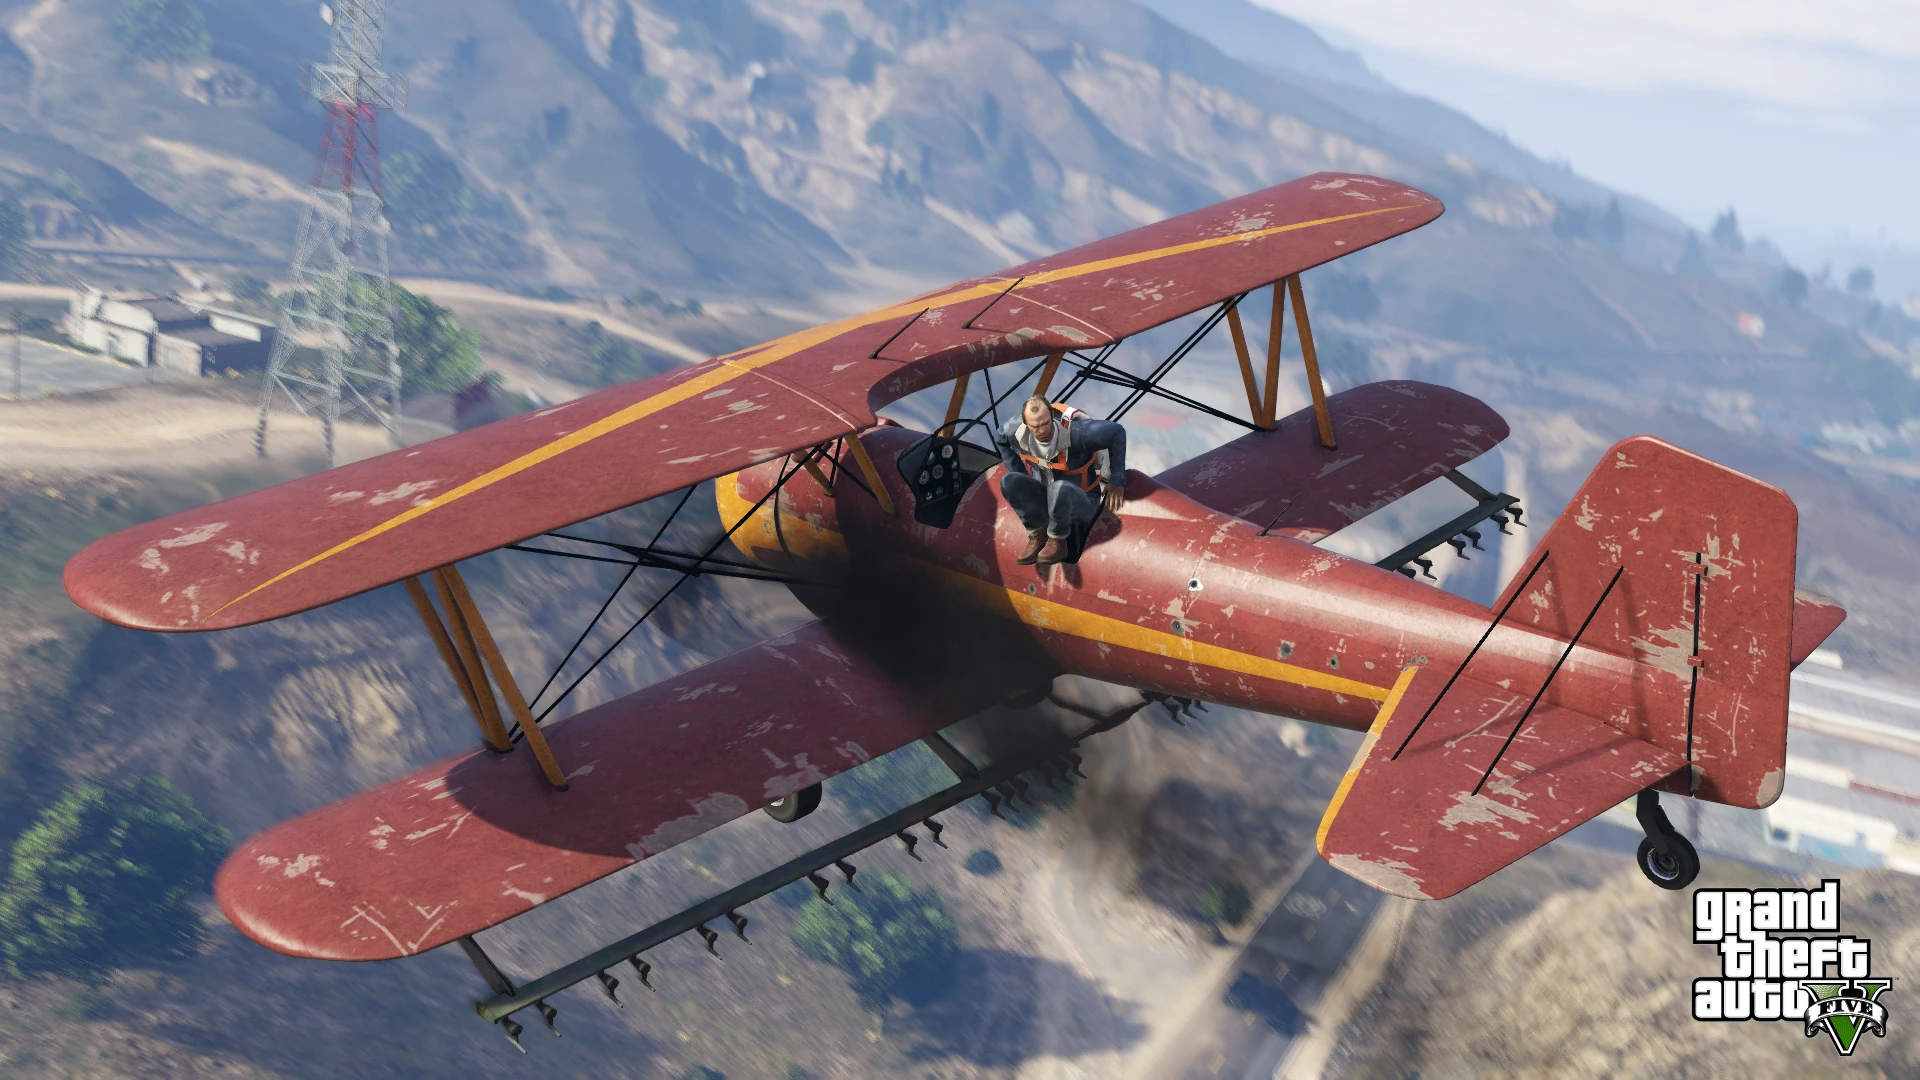 Grand Theft Auto V - PS4 Screenshot 10 - Avião